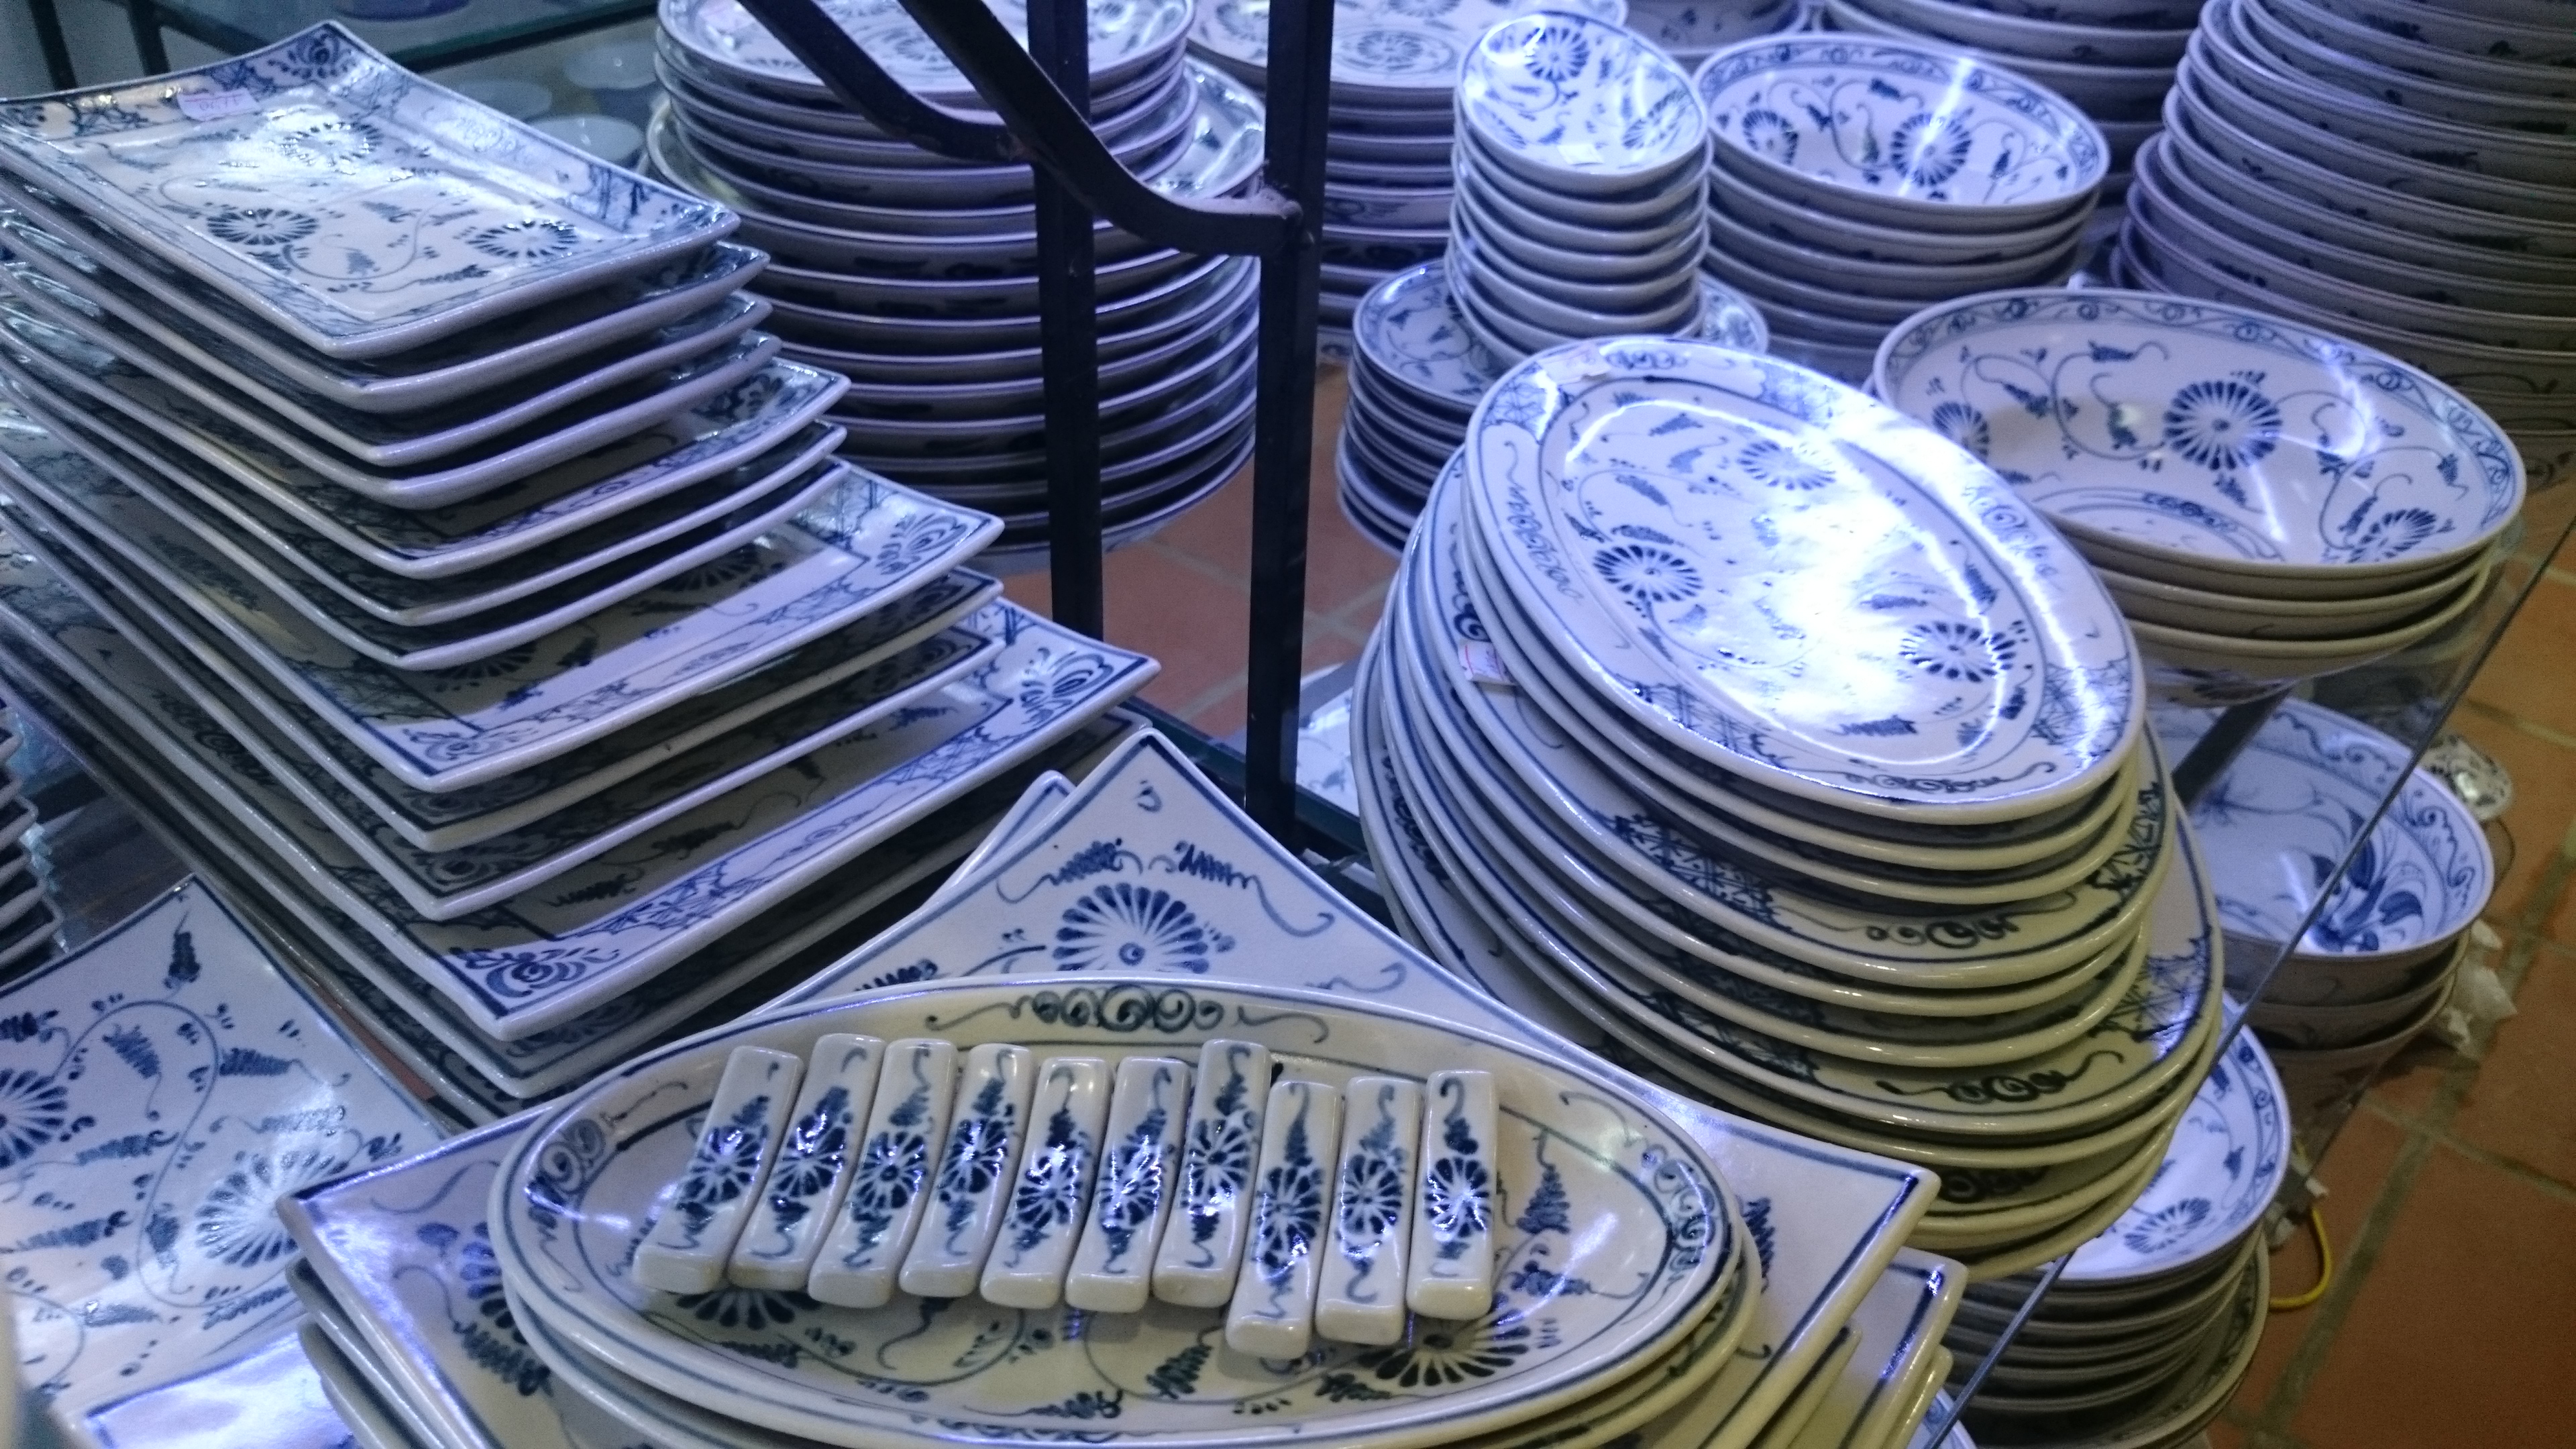 đặt hàng sản xuất bát đĩa tại hà nội